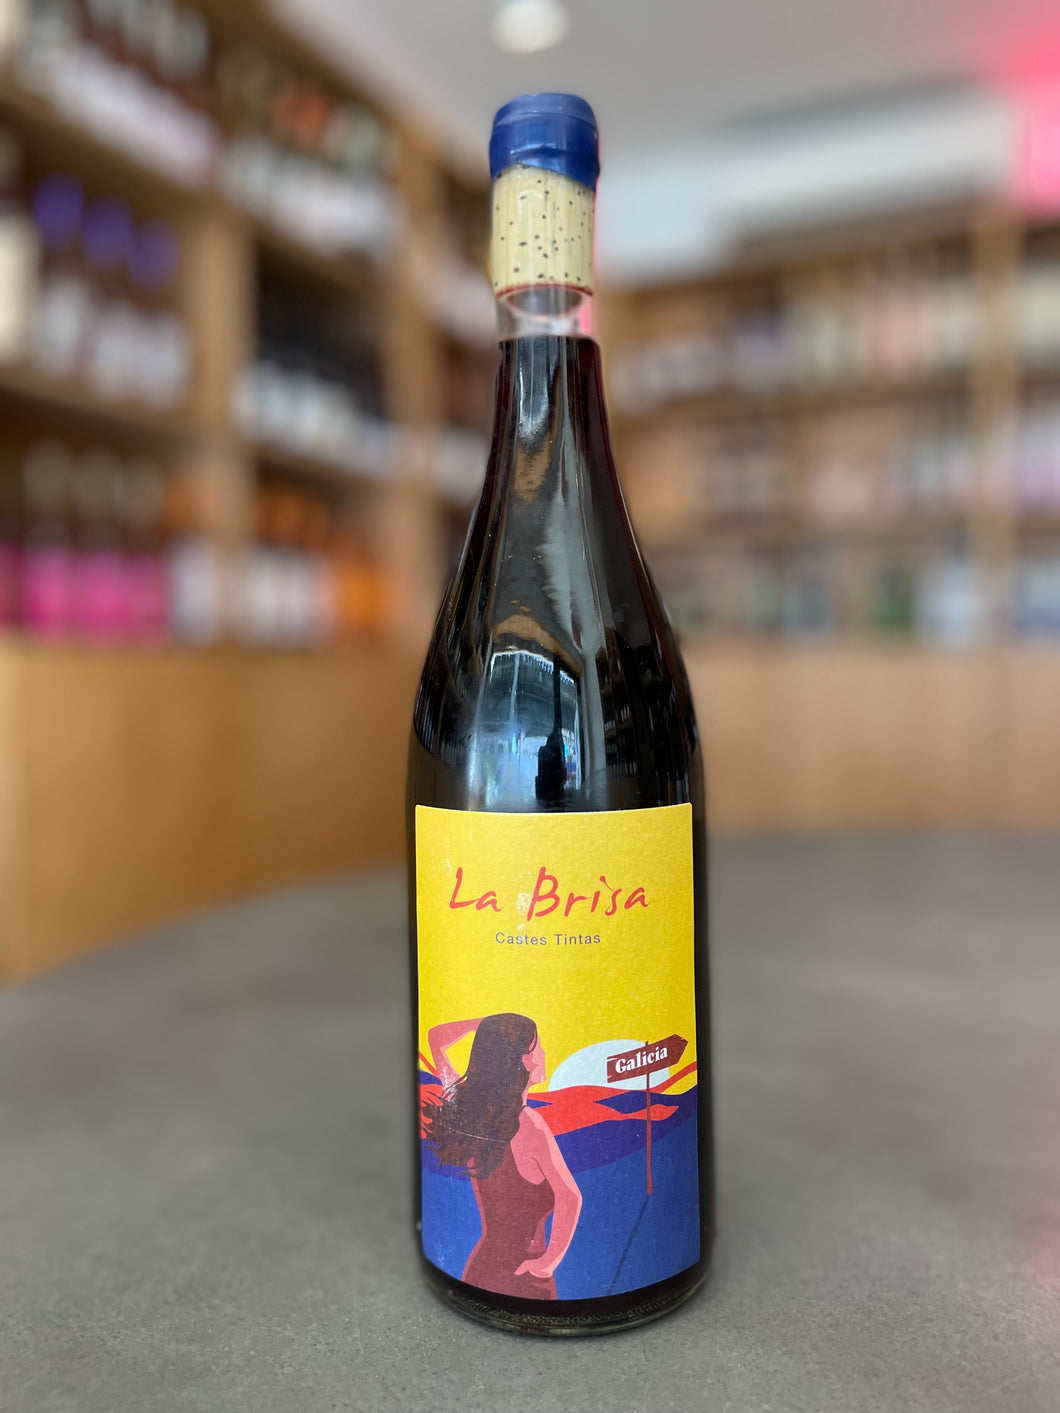 Galgo Wines, La Brisa Castes Tintas (2019)